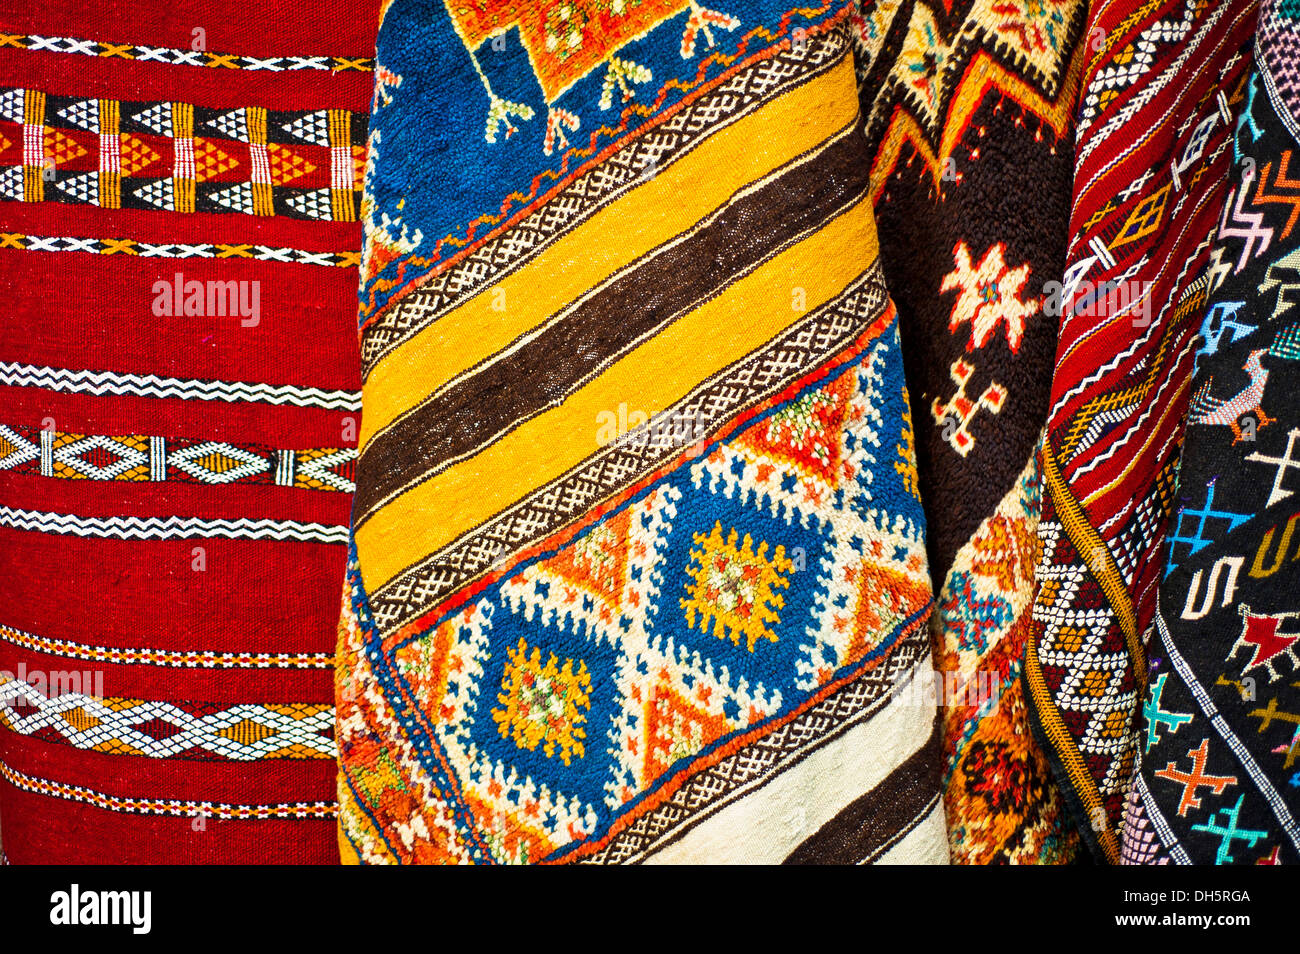 Teppiche oder Teppiche mit traditionellen Muster der Araber und Berber Leute, zum Verkauf in den Souk Basar Bereich, Marokko, Afrika Stockfoto